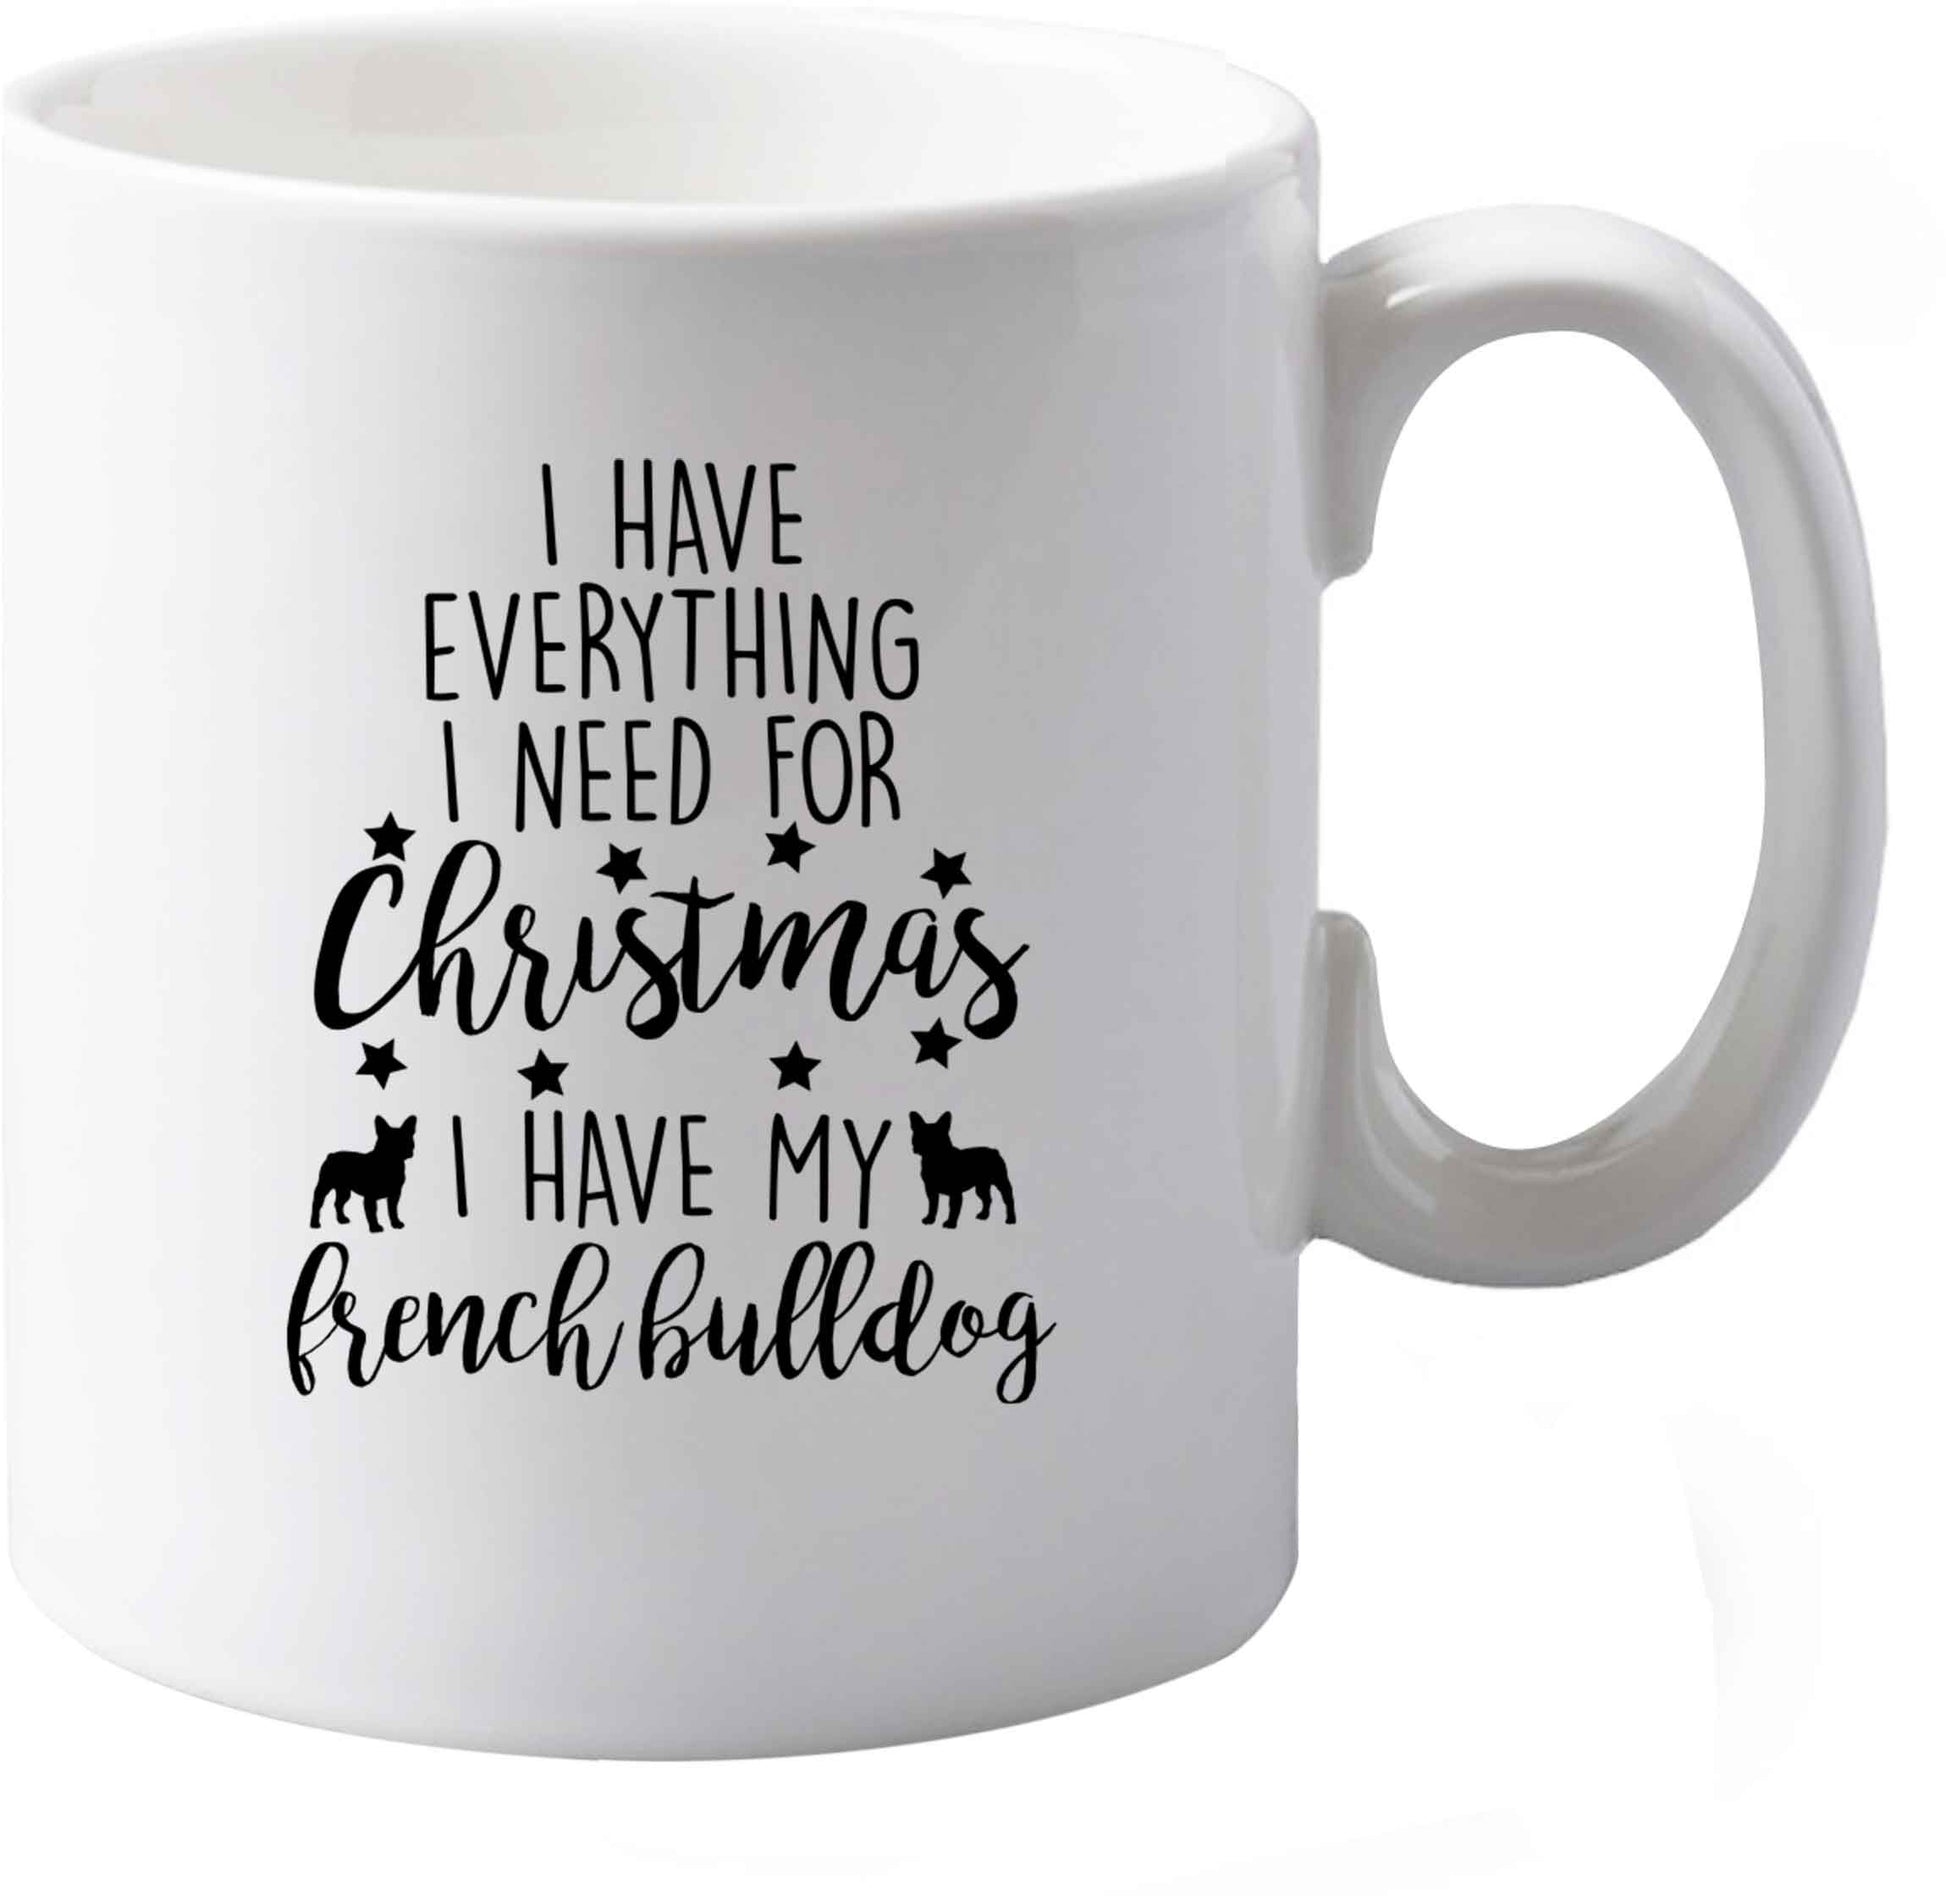 10 oz I have everything I need for Christmas I have my french bulldog ceramic mug both sides